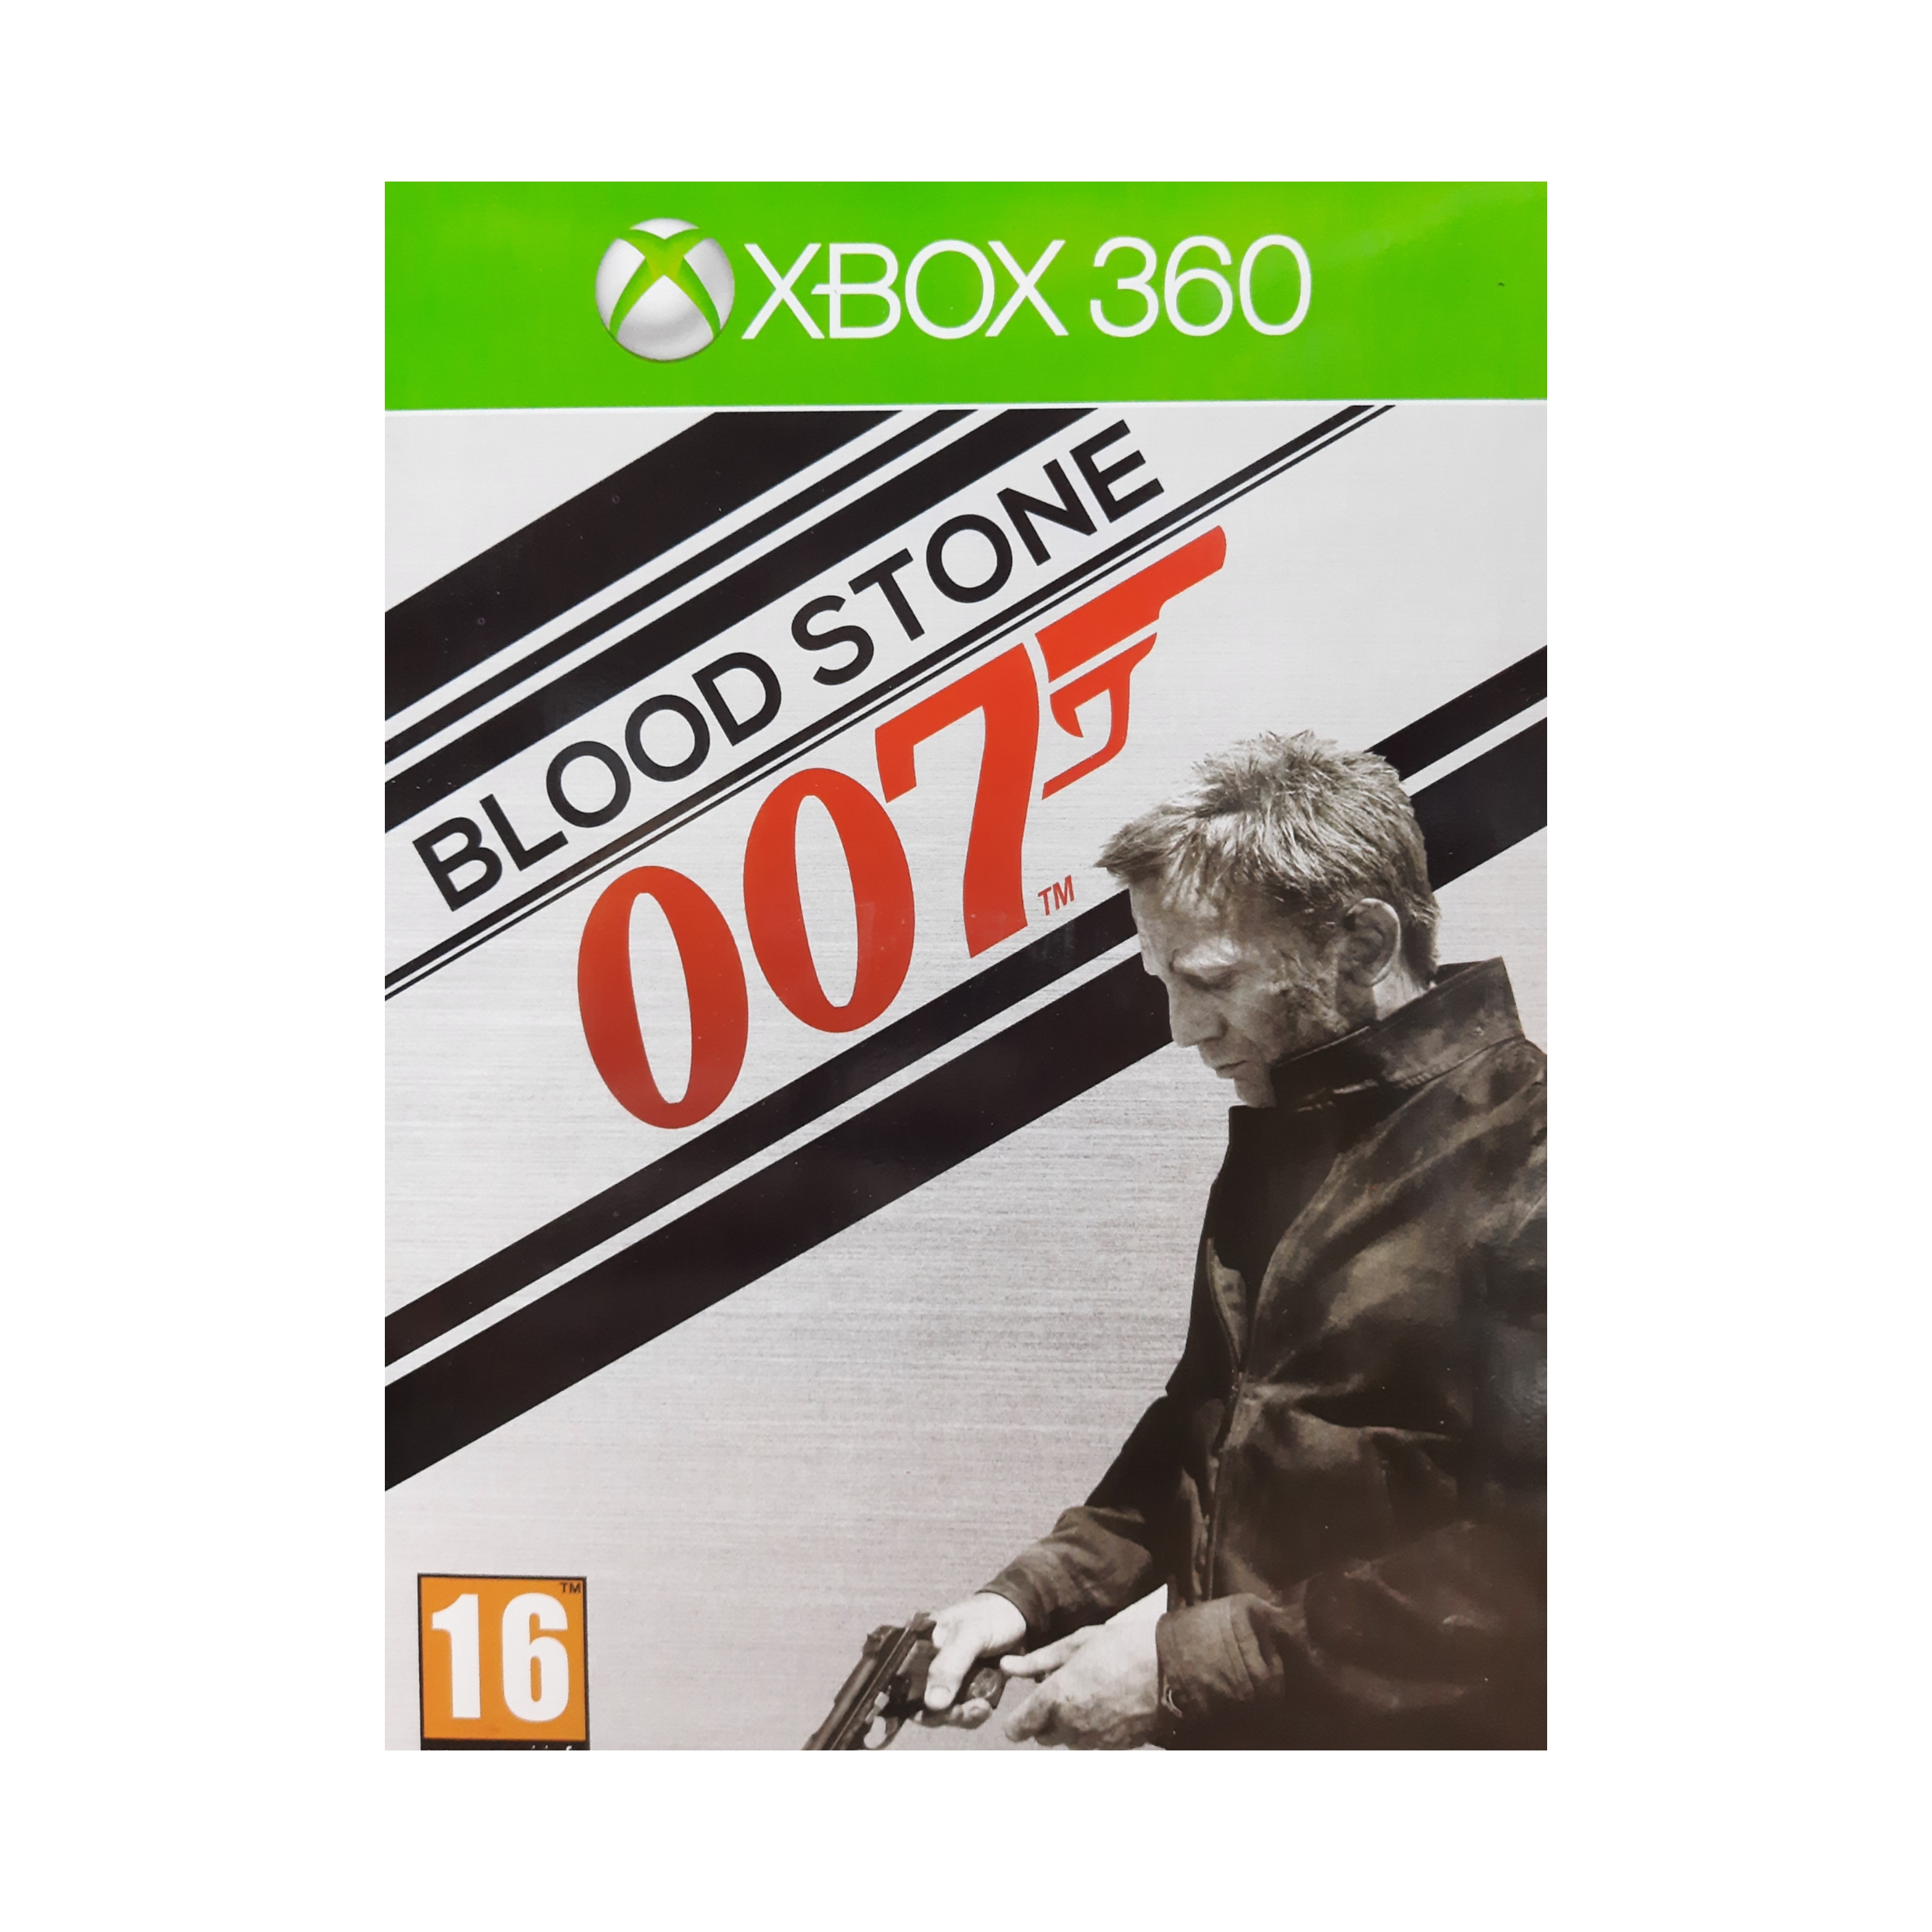 بازی Blood Stone 007 مخصوص Xbox 360